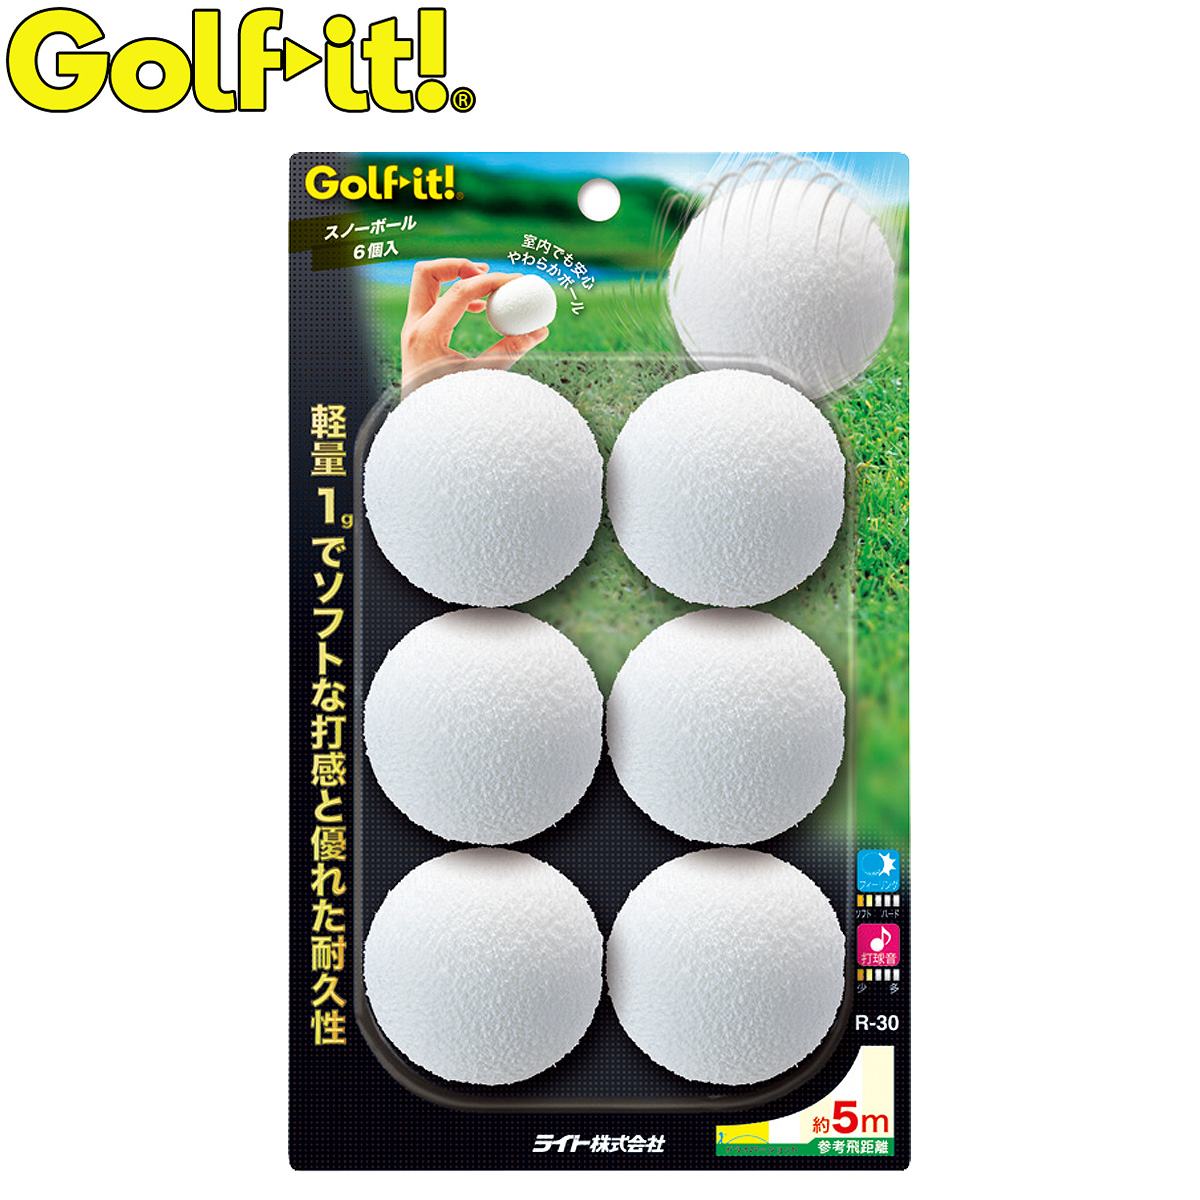 軽量1gでソフトな打感と優れた耐久性 Golfit ゴルフイット LiTE ライト 日本正規品 R-30 セットアップ プラクティスボール あす楽対応 スノーボール 正規販売店 6個入り